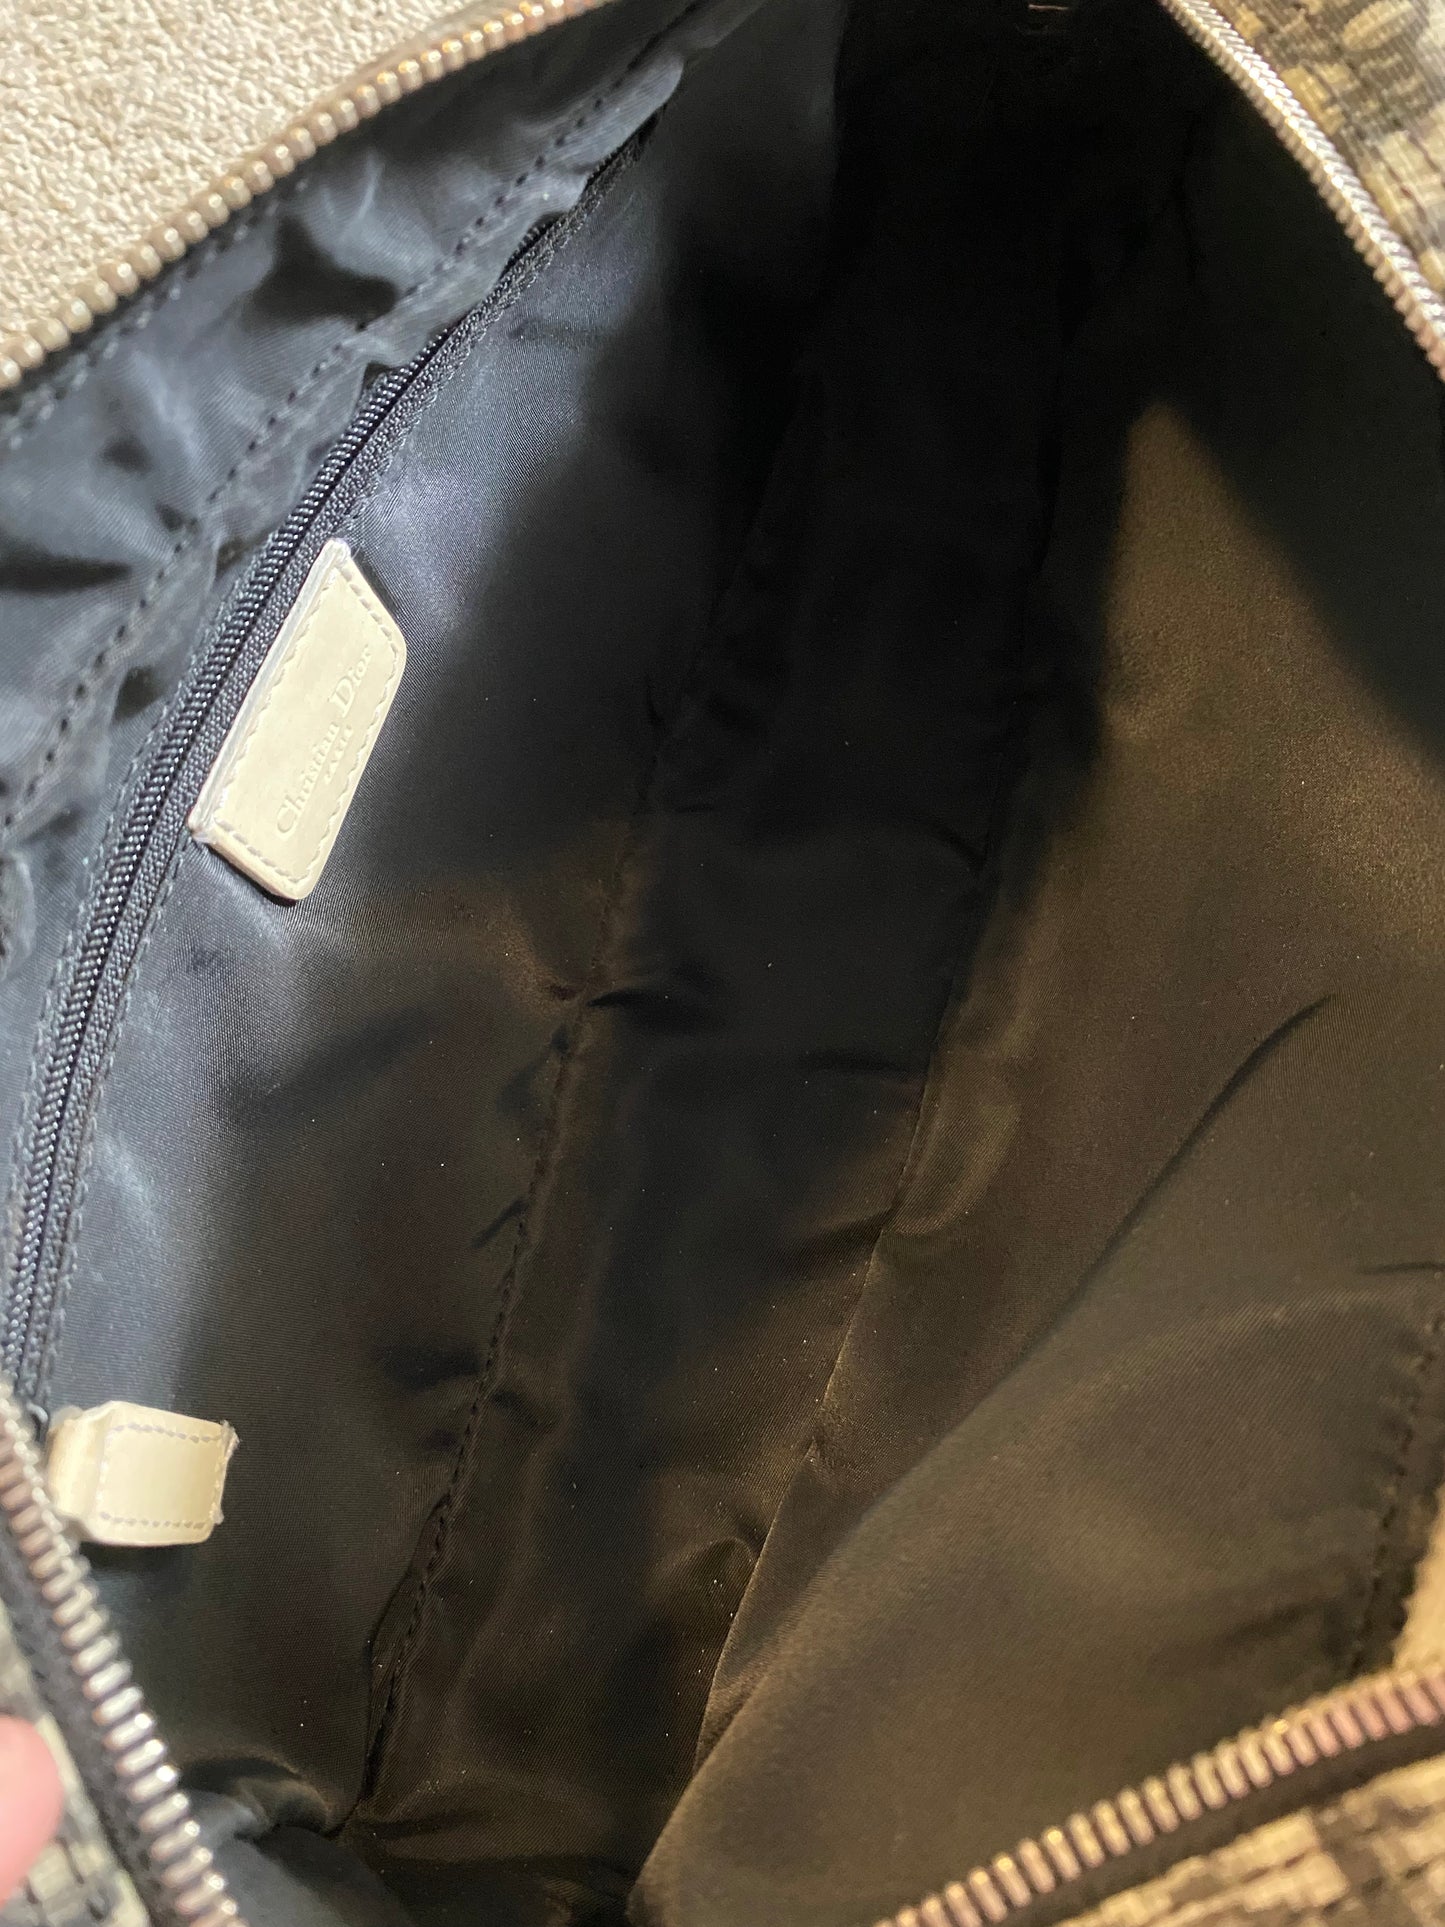 Dior Crossbody / Shoulder bag